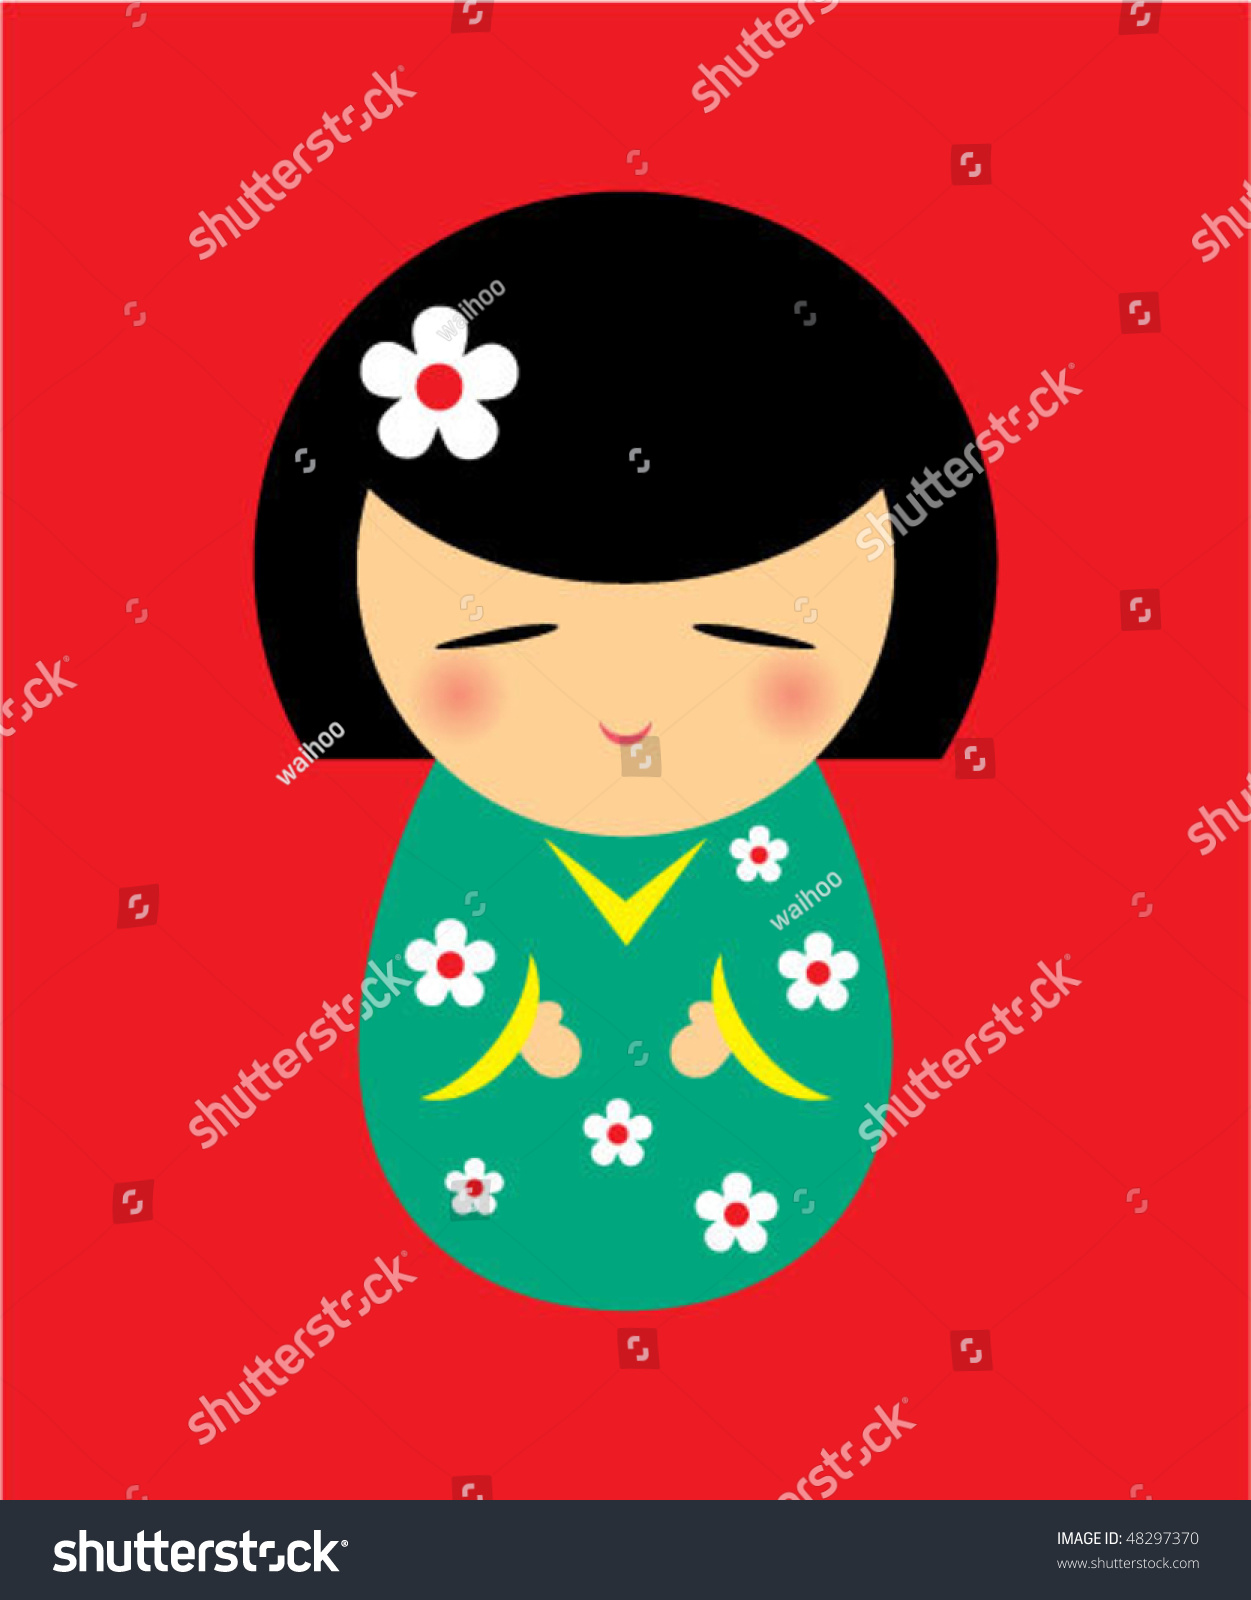 Japanese Doll Vector - 48297370 : Shutterstock